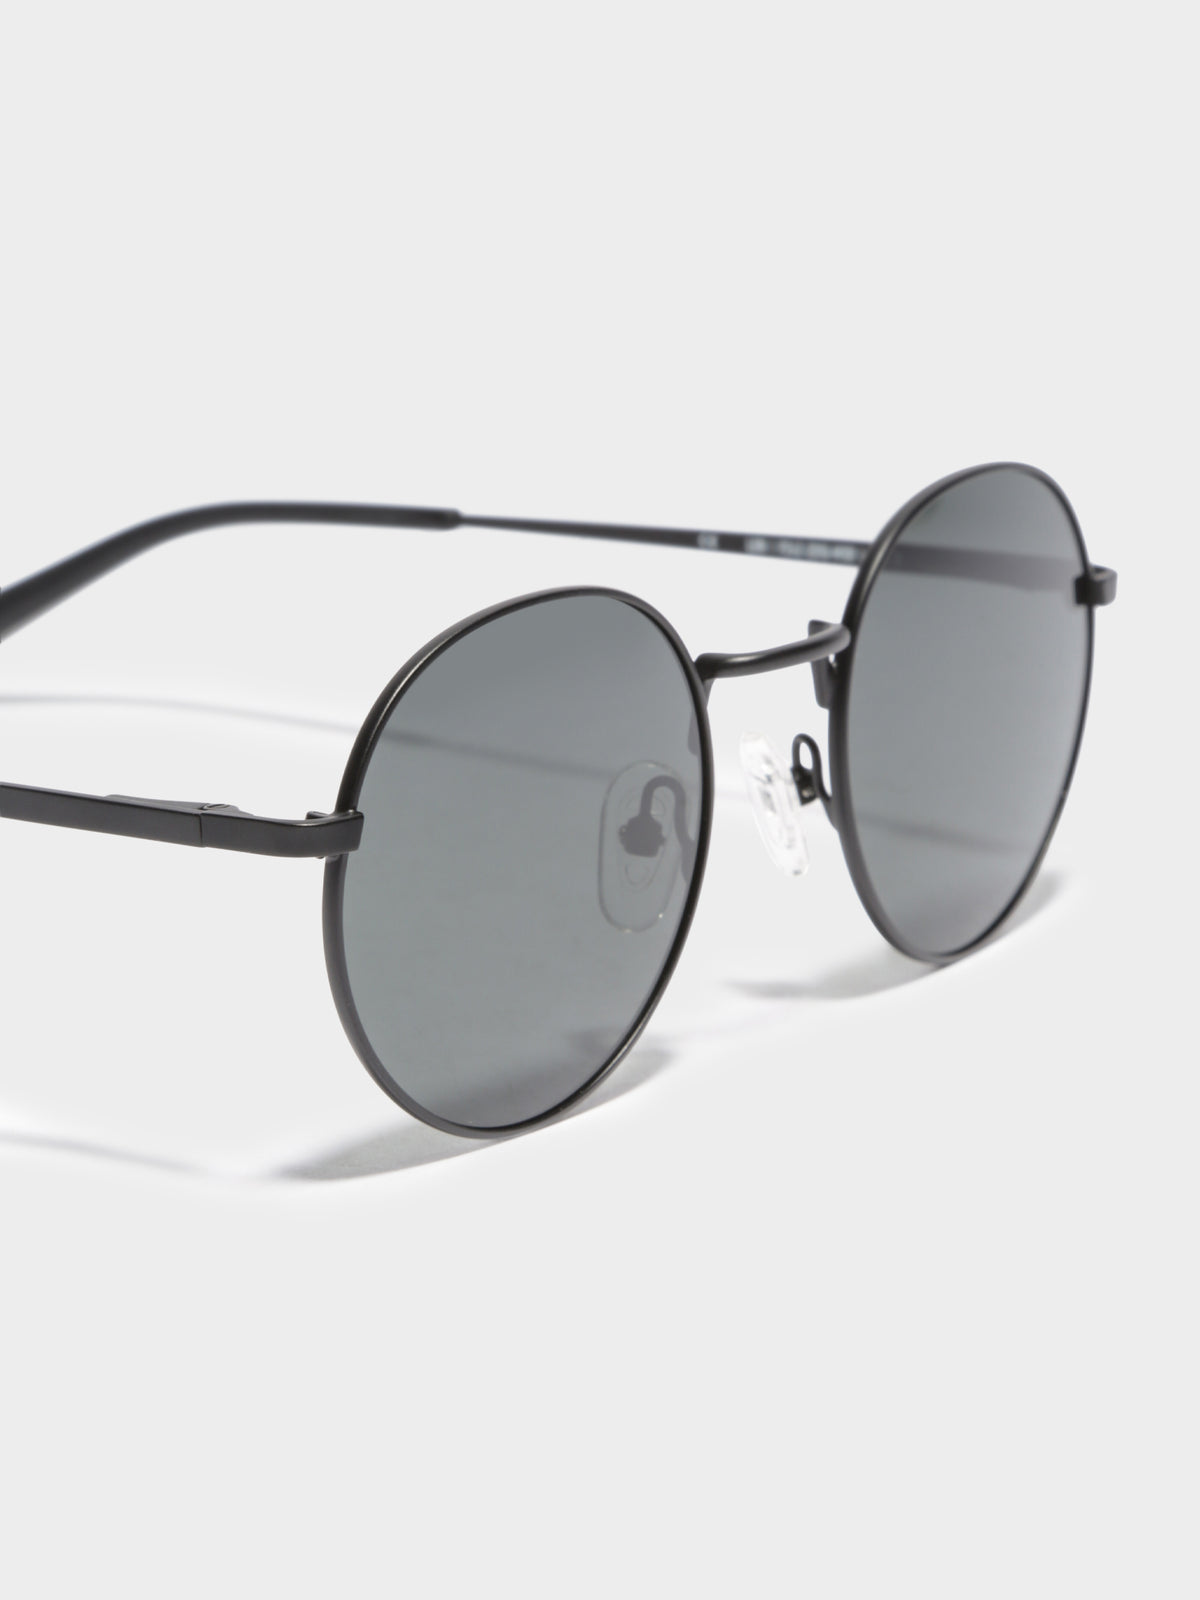 LON Polarised Sunglasses in Matte Black &amp; Grey